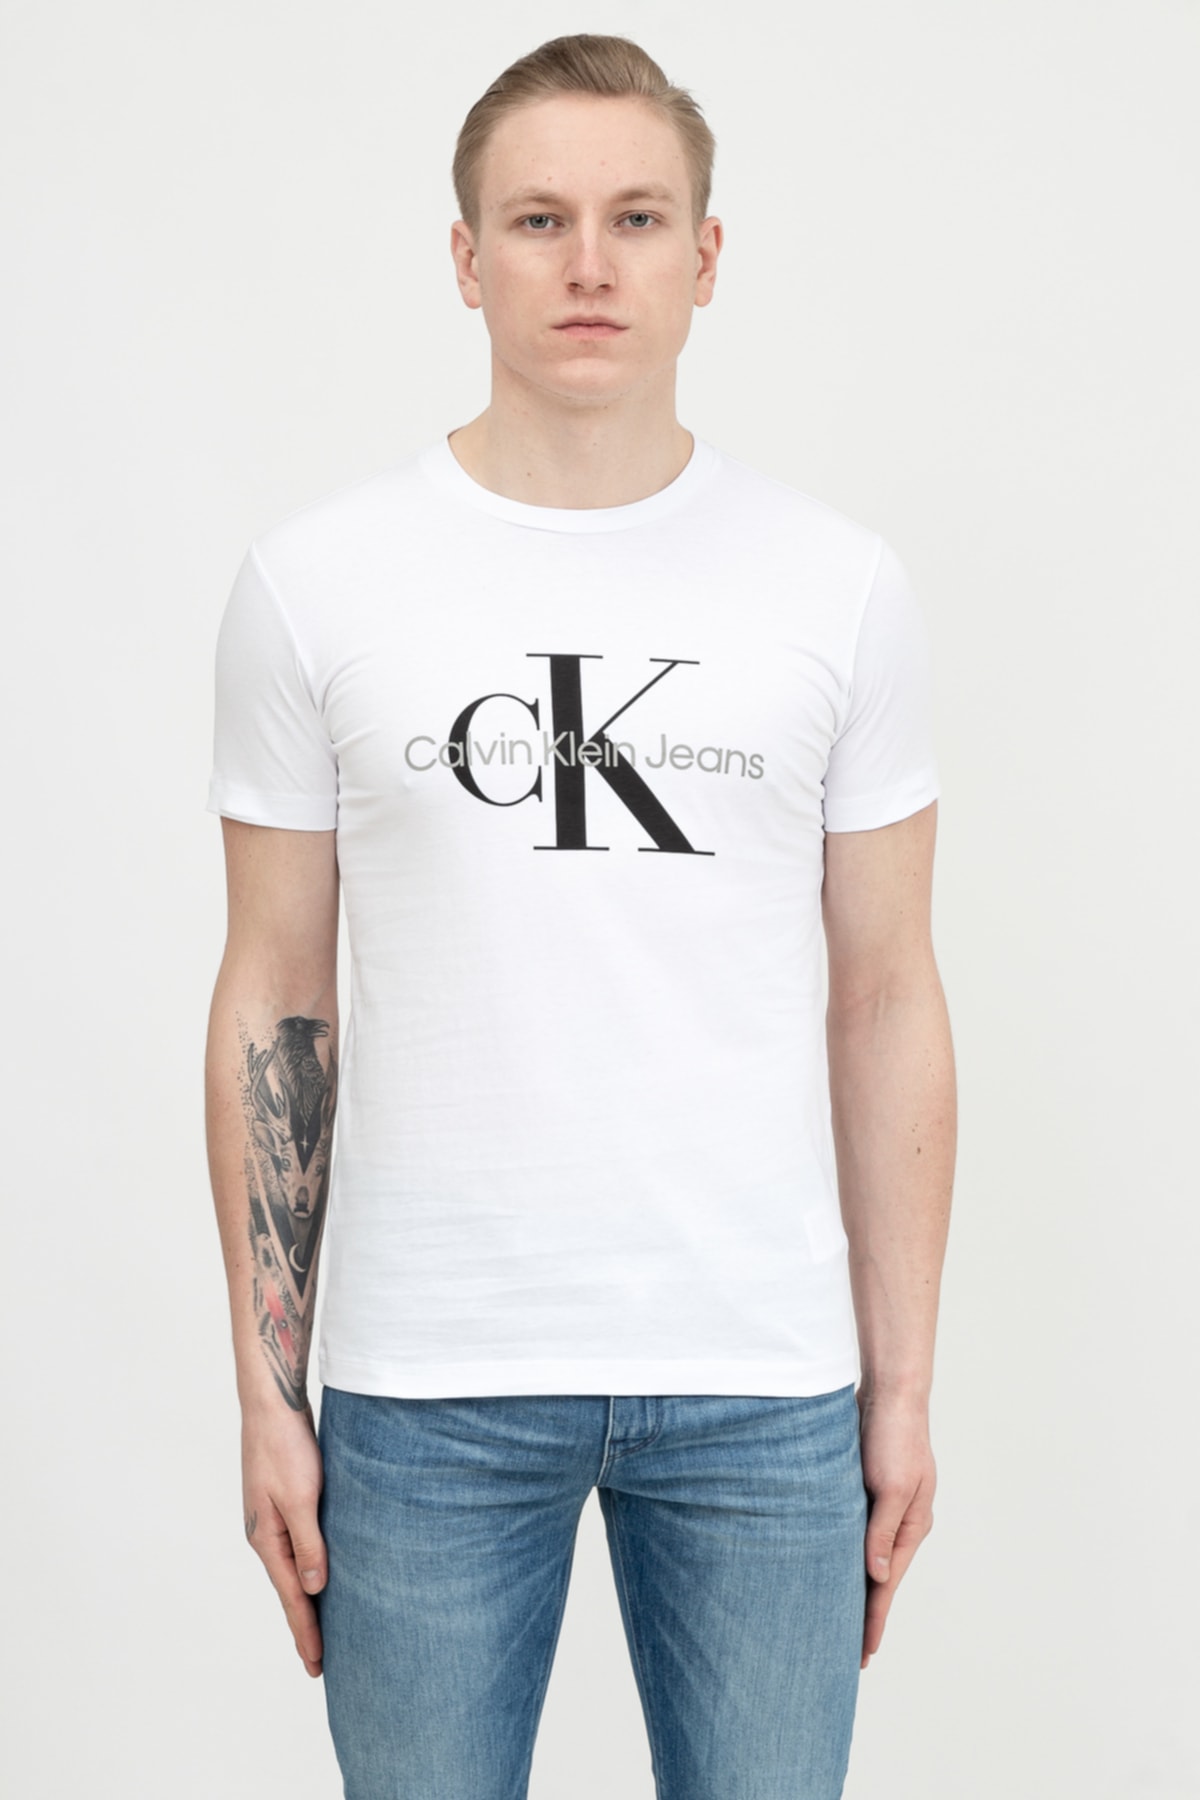 Calvin Klein T-Shirt Weiß Regular Fit Fast ausverkauft